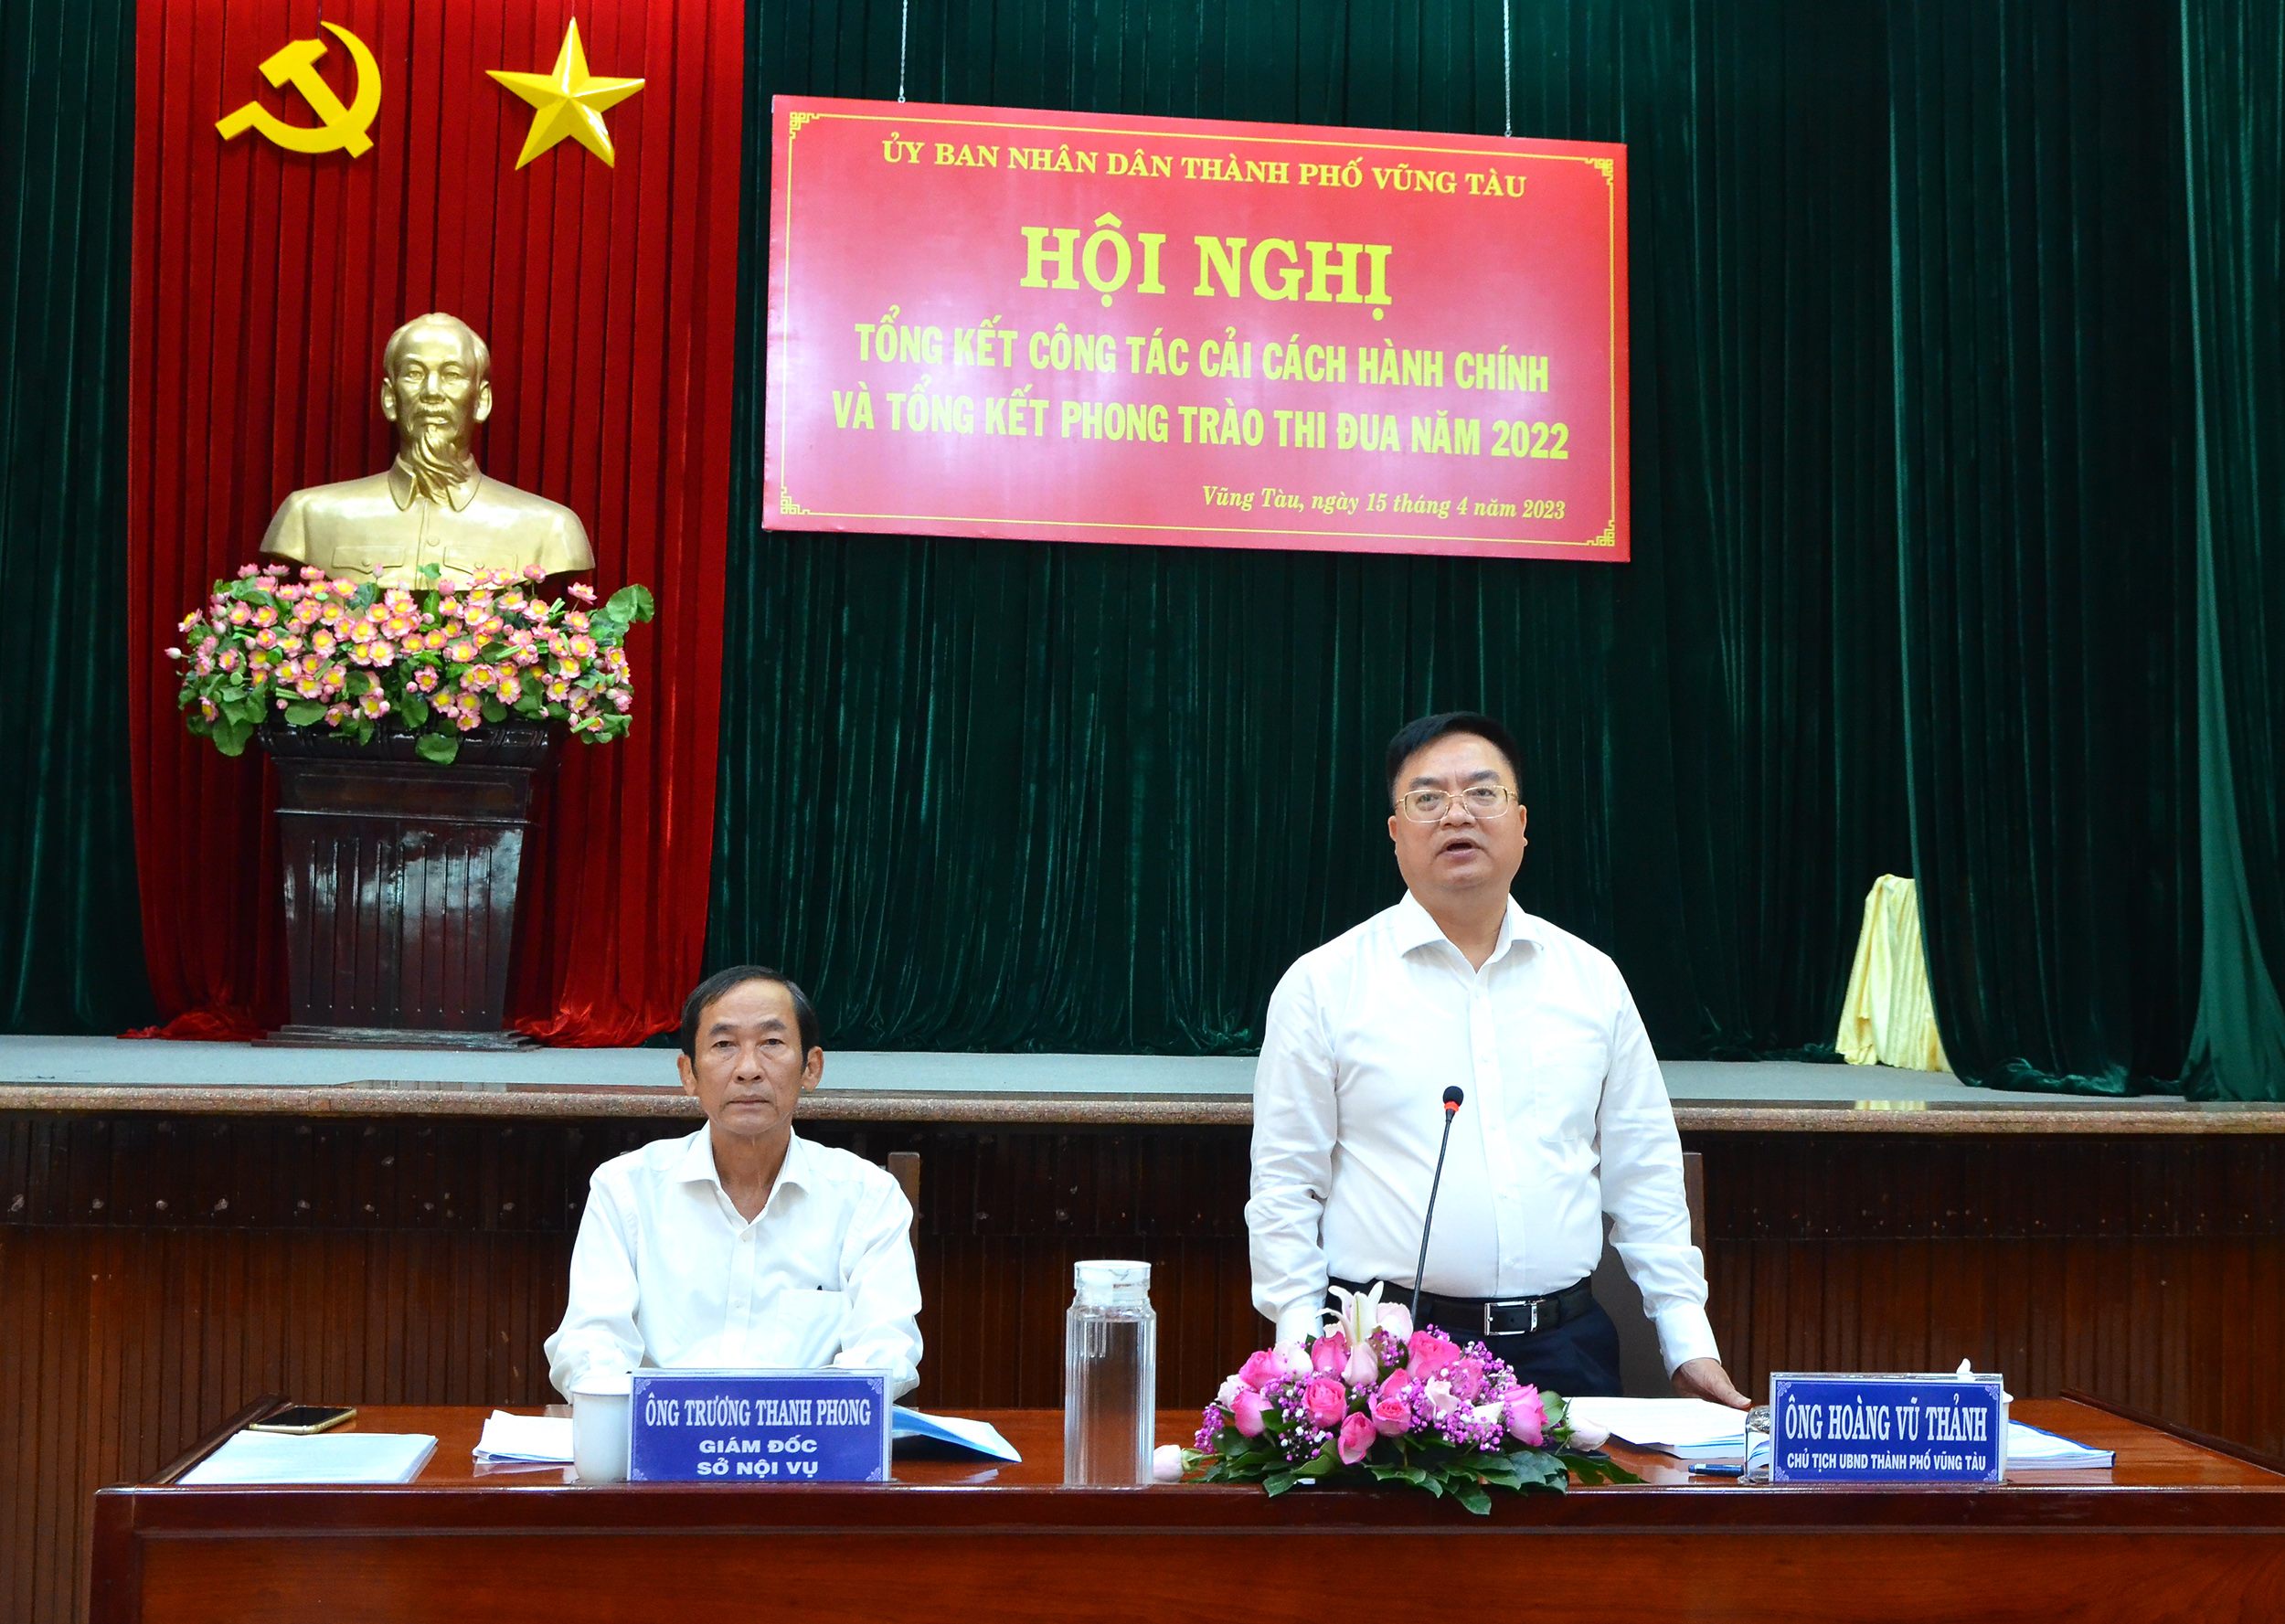 Ông Trương Thanh Phong, Giám đốc Sở Nội vụ và ông Hoàng Vũ Thảnh, Chủ tịch UBND TP.Vũng Tàu đồng chủ trì hội nghị.